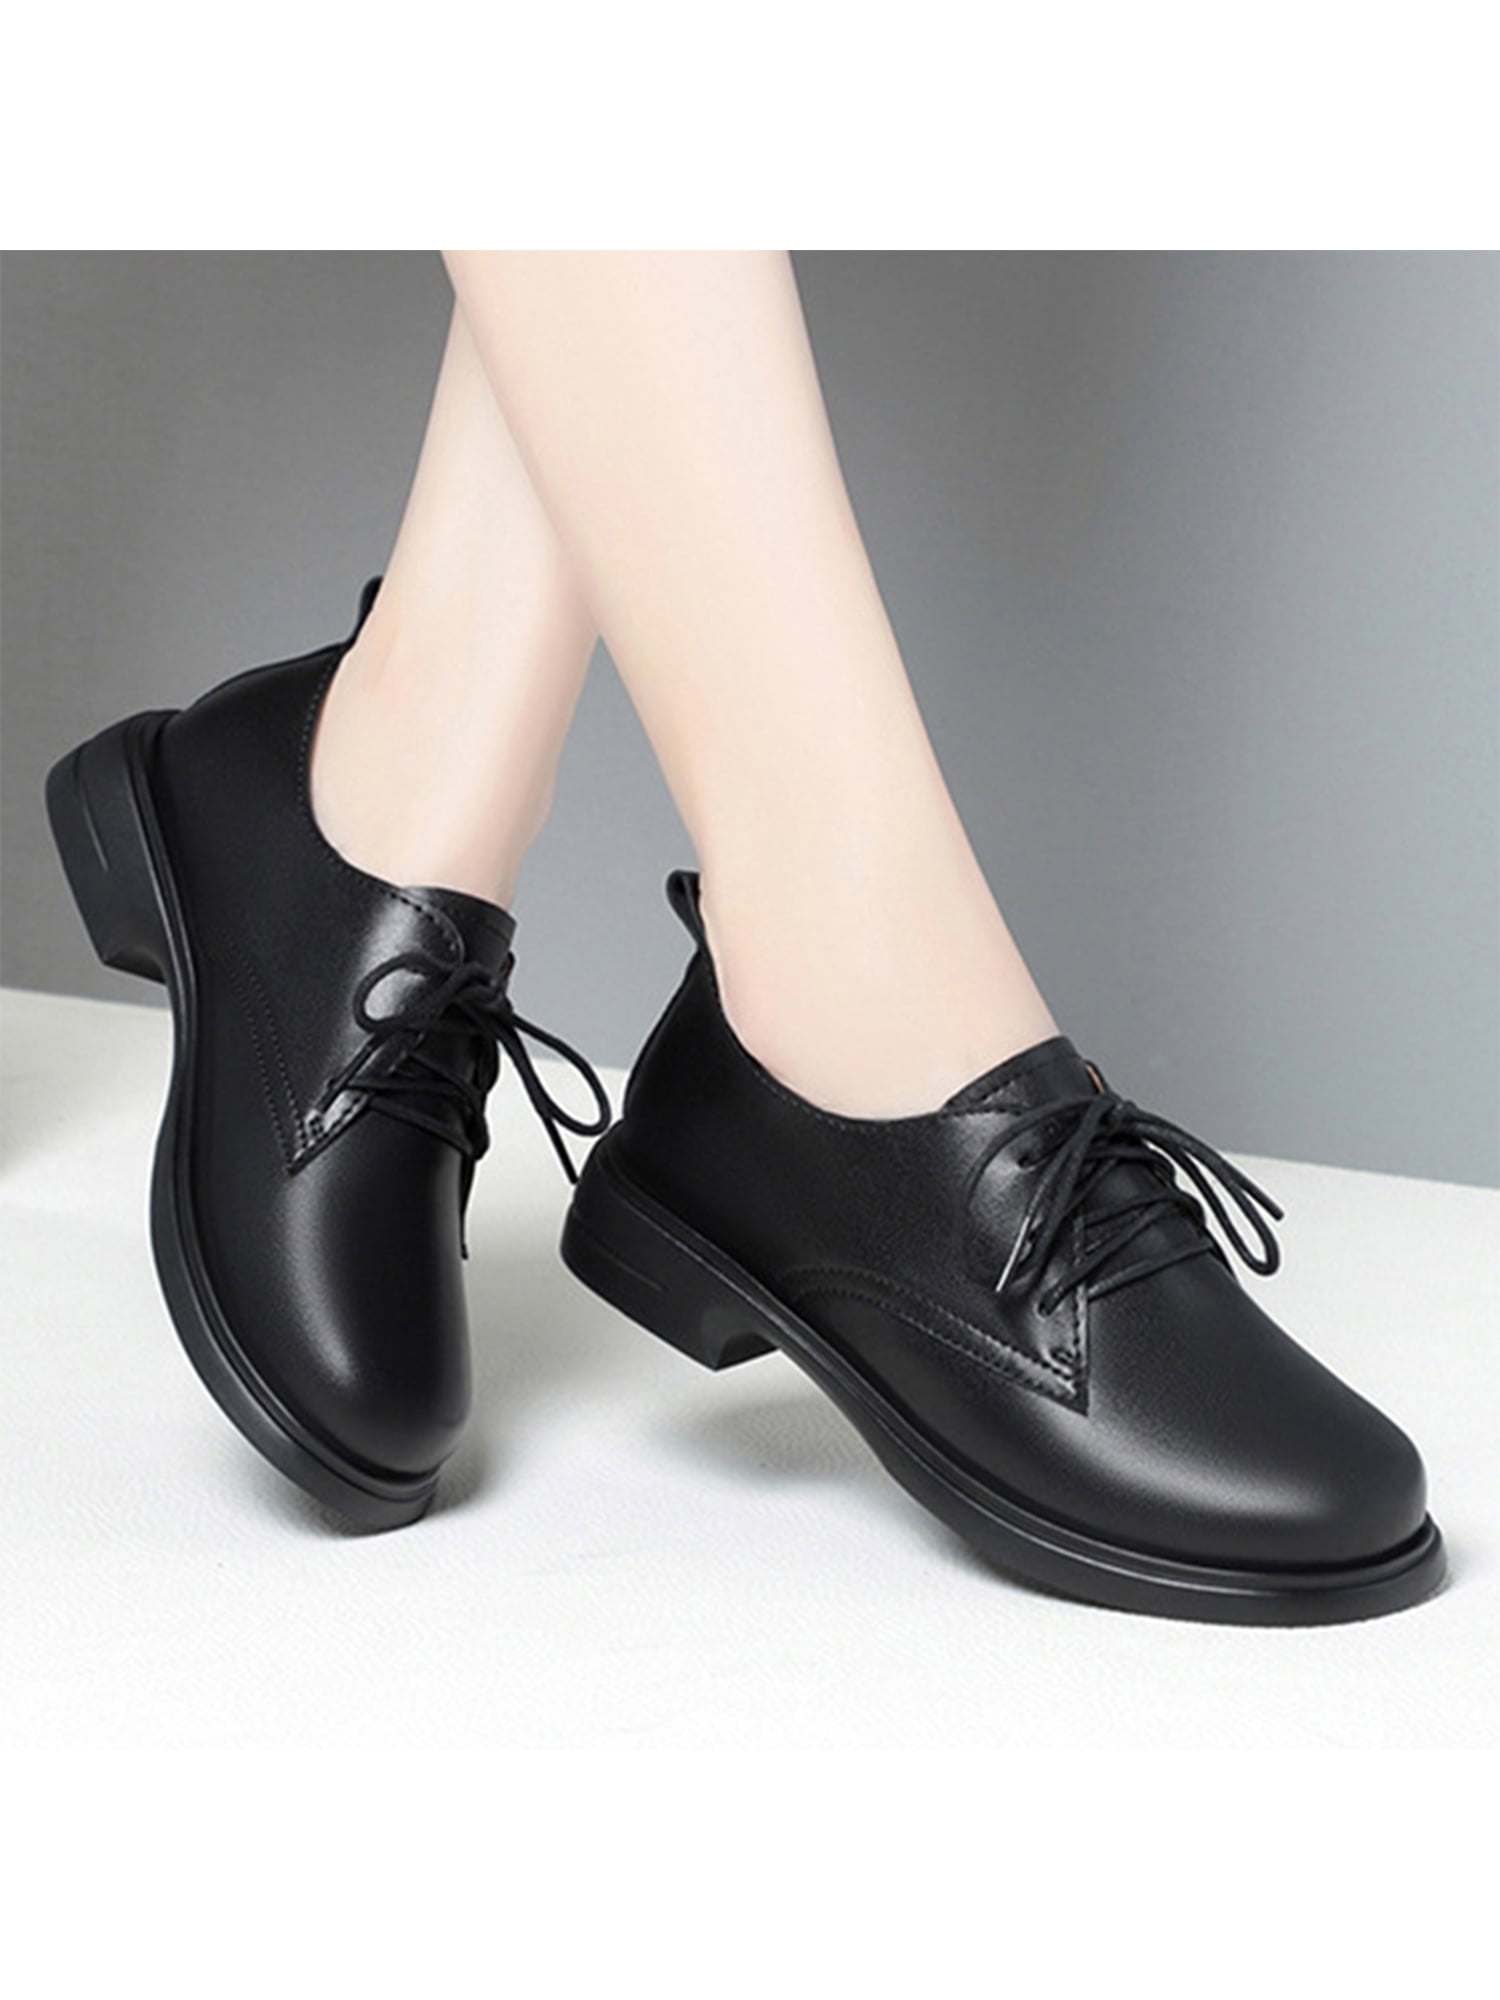 women’s shoes dress shoes